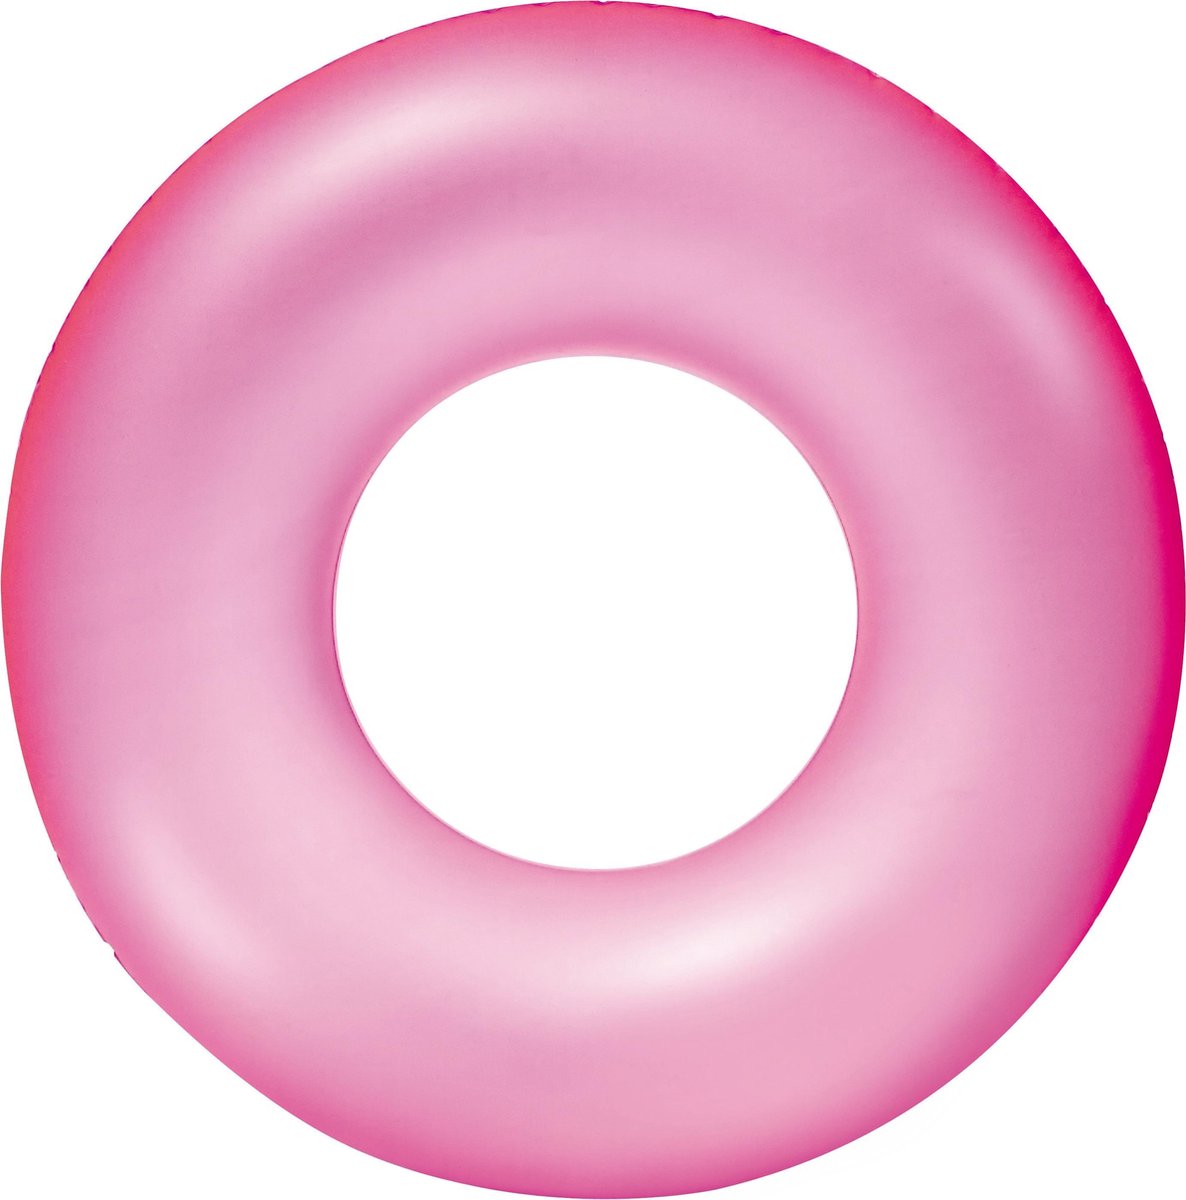 Opblaasbare neon roze zwemband 76 cm voor volwassenen - Zwemringen - Veilig zwemmen - Roze zwembanden kinderen / volwassenen